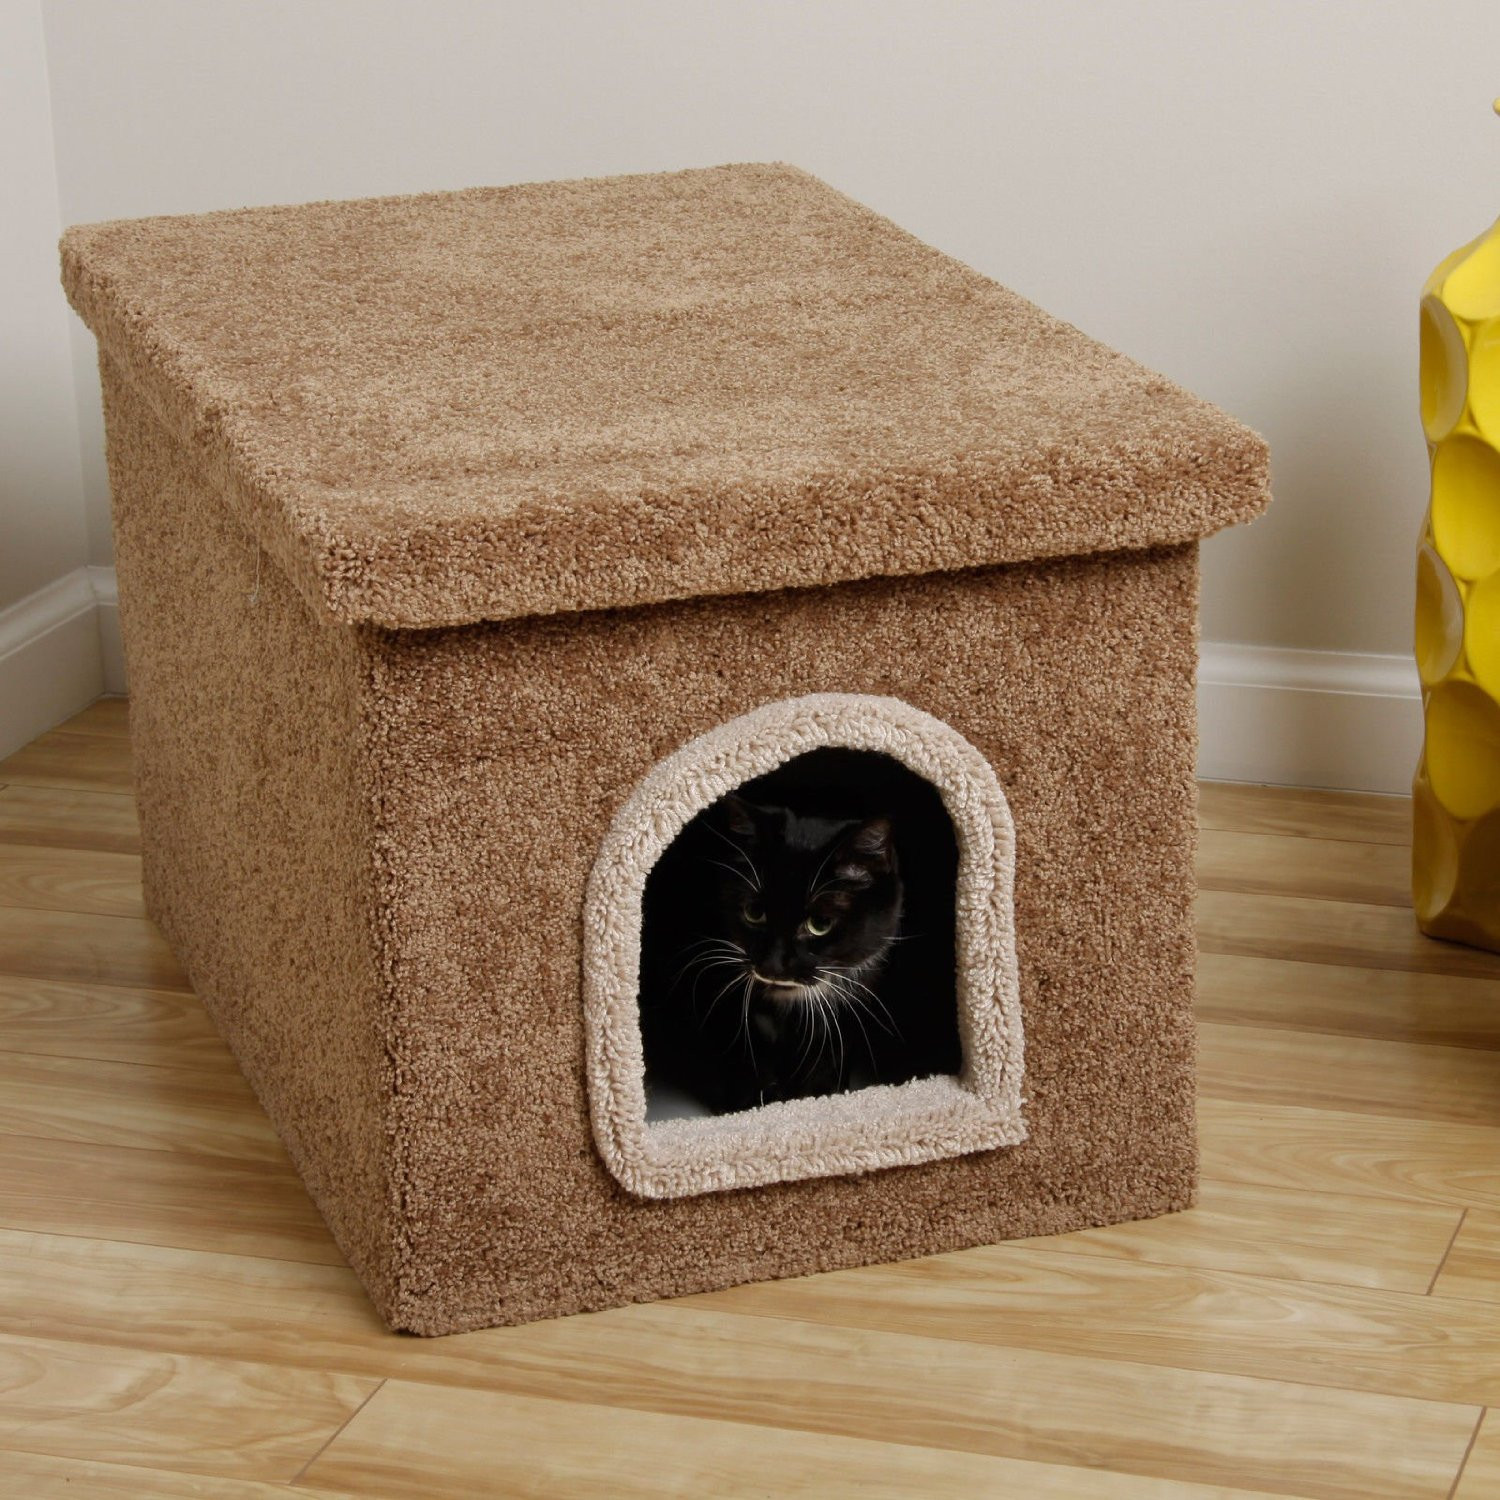 DIY Cat Litter Box Furniture
 An Easy DIY Cat Litter Box Ideas – HomesFeed